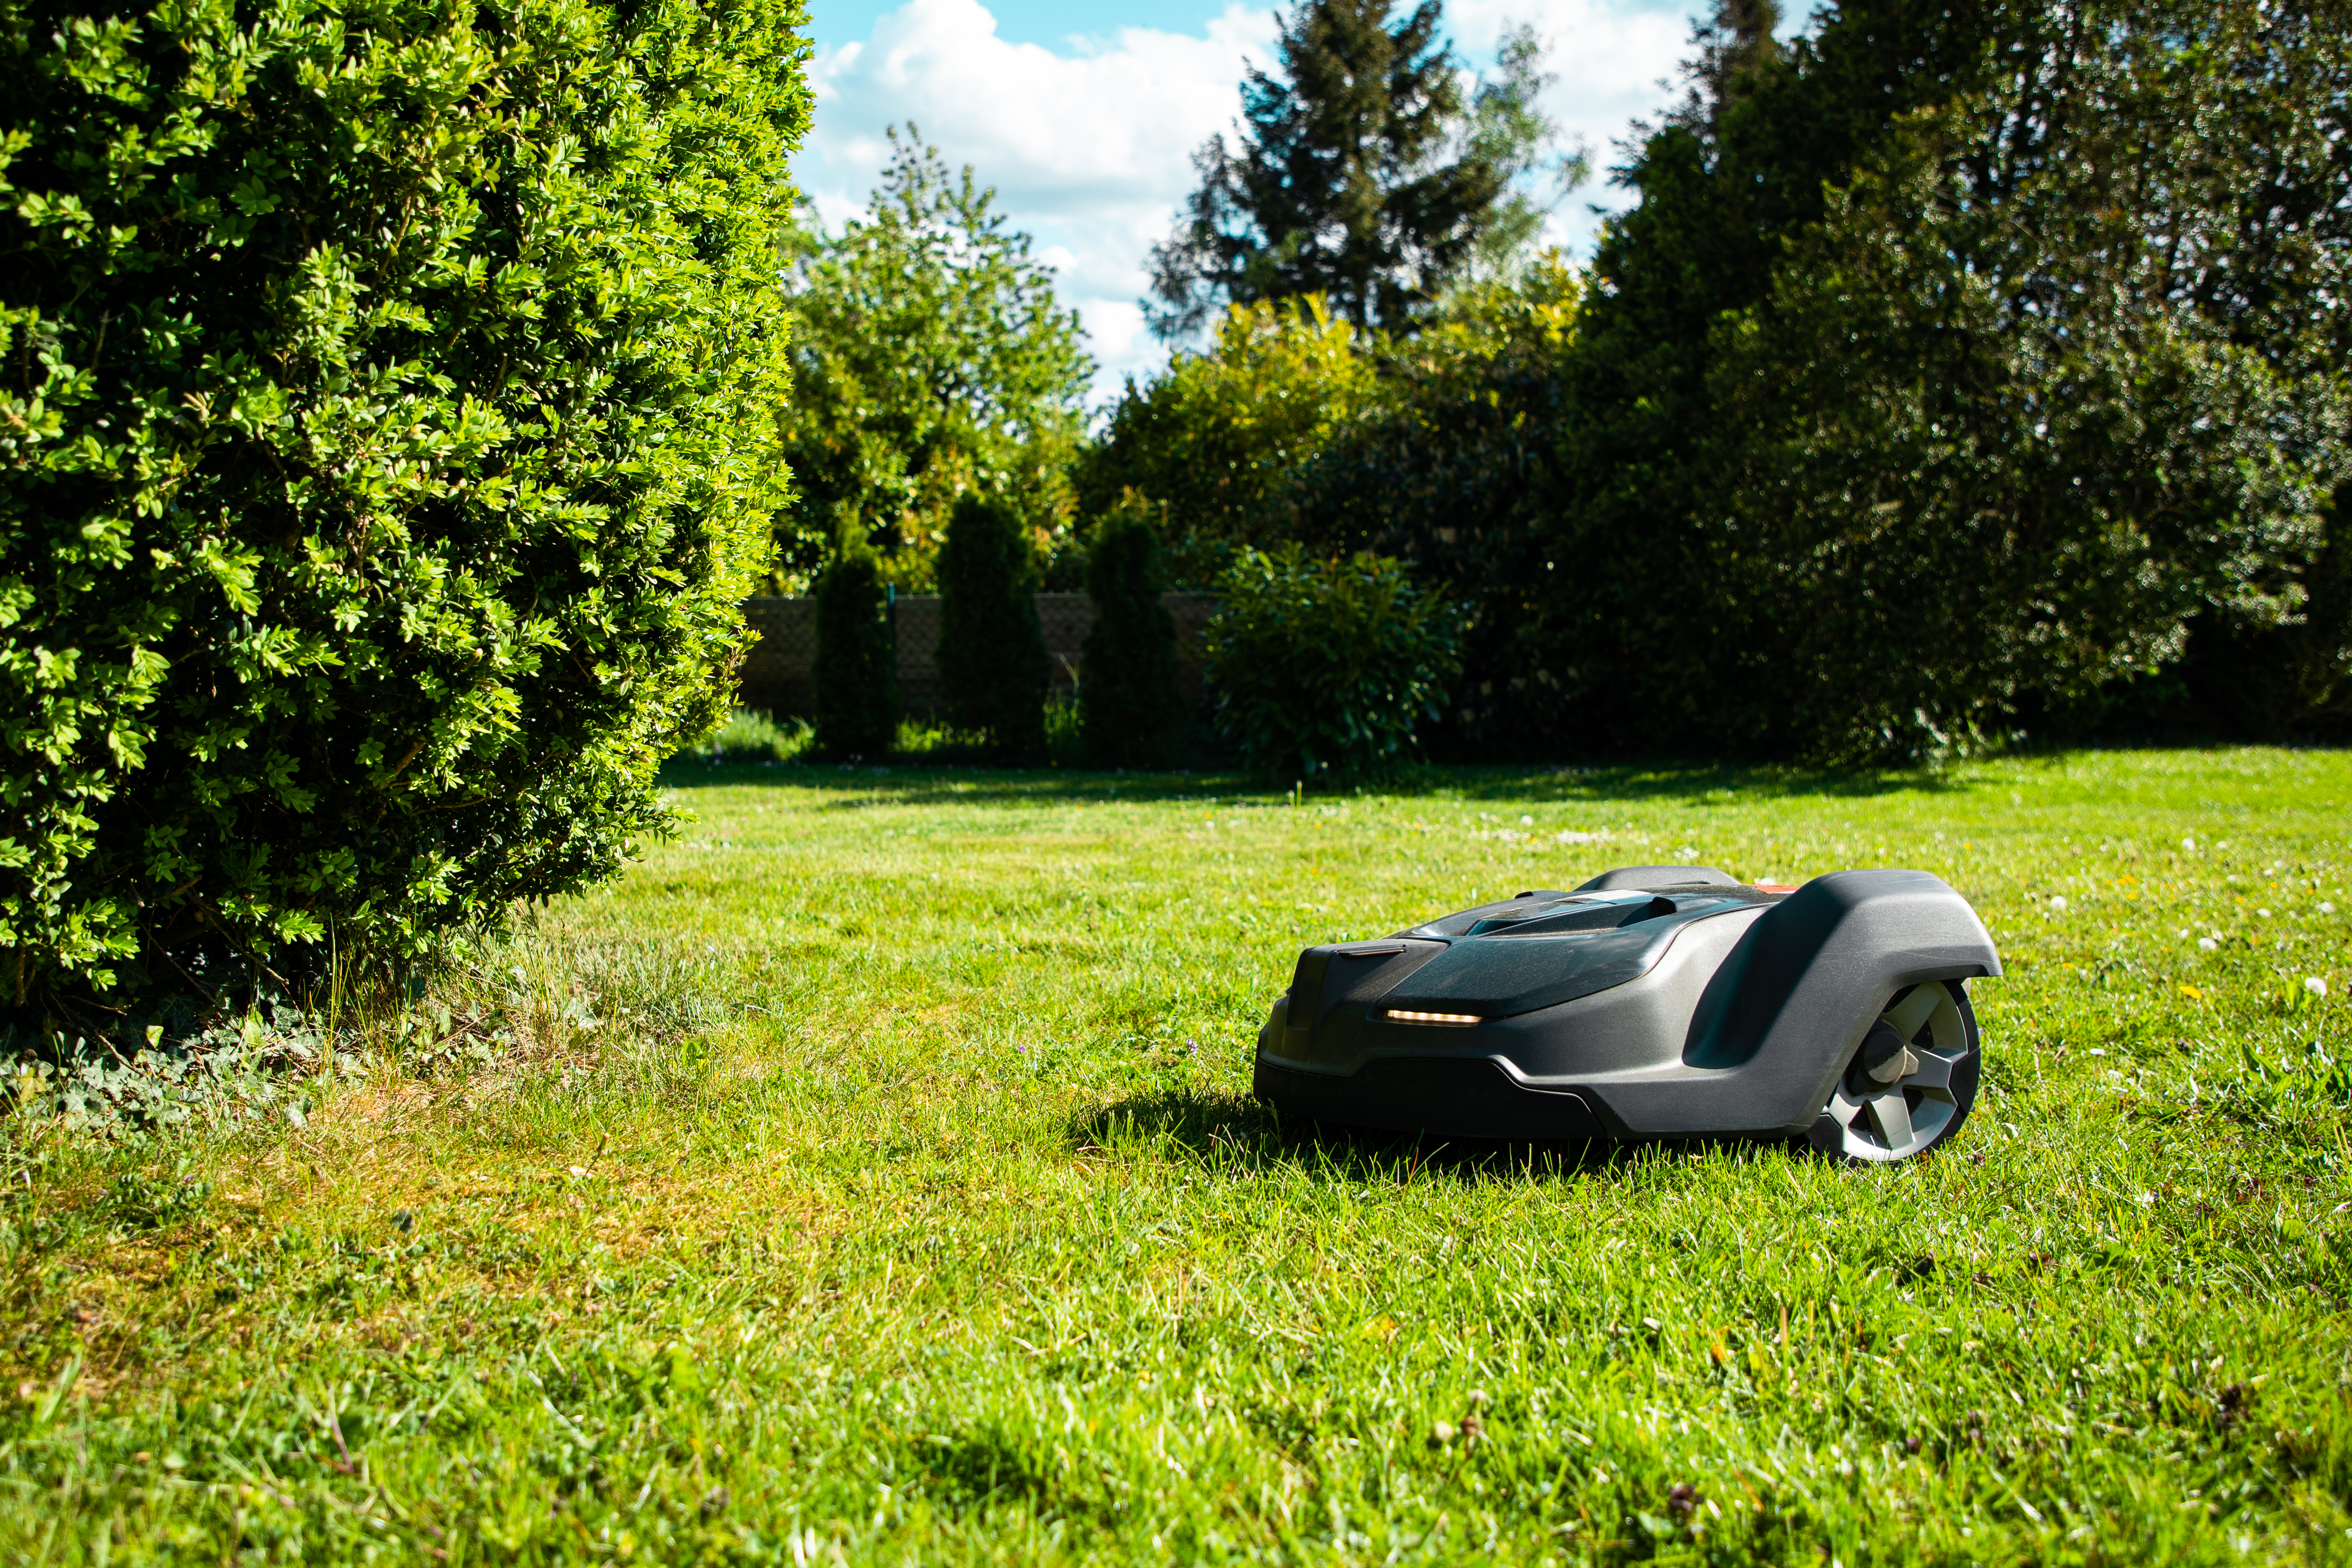 Automatyczna kosiarka — ten robot skosi trawę za ciebie - Noizz